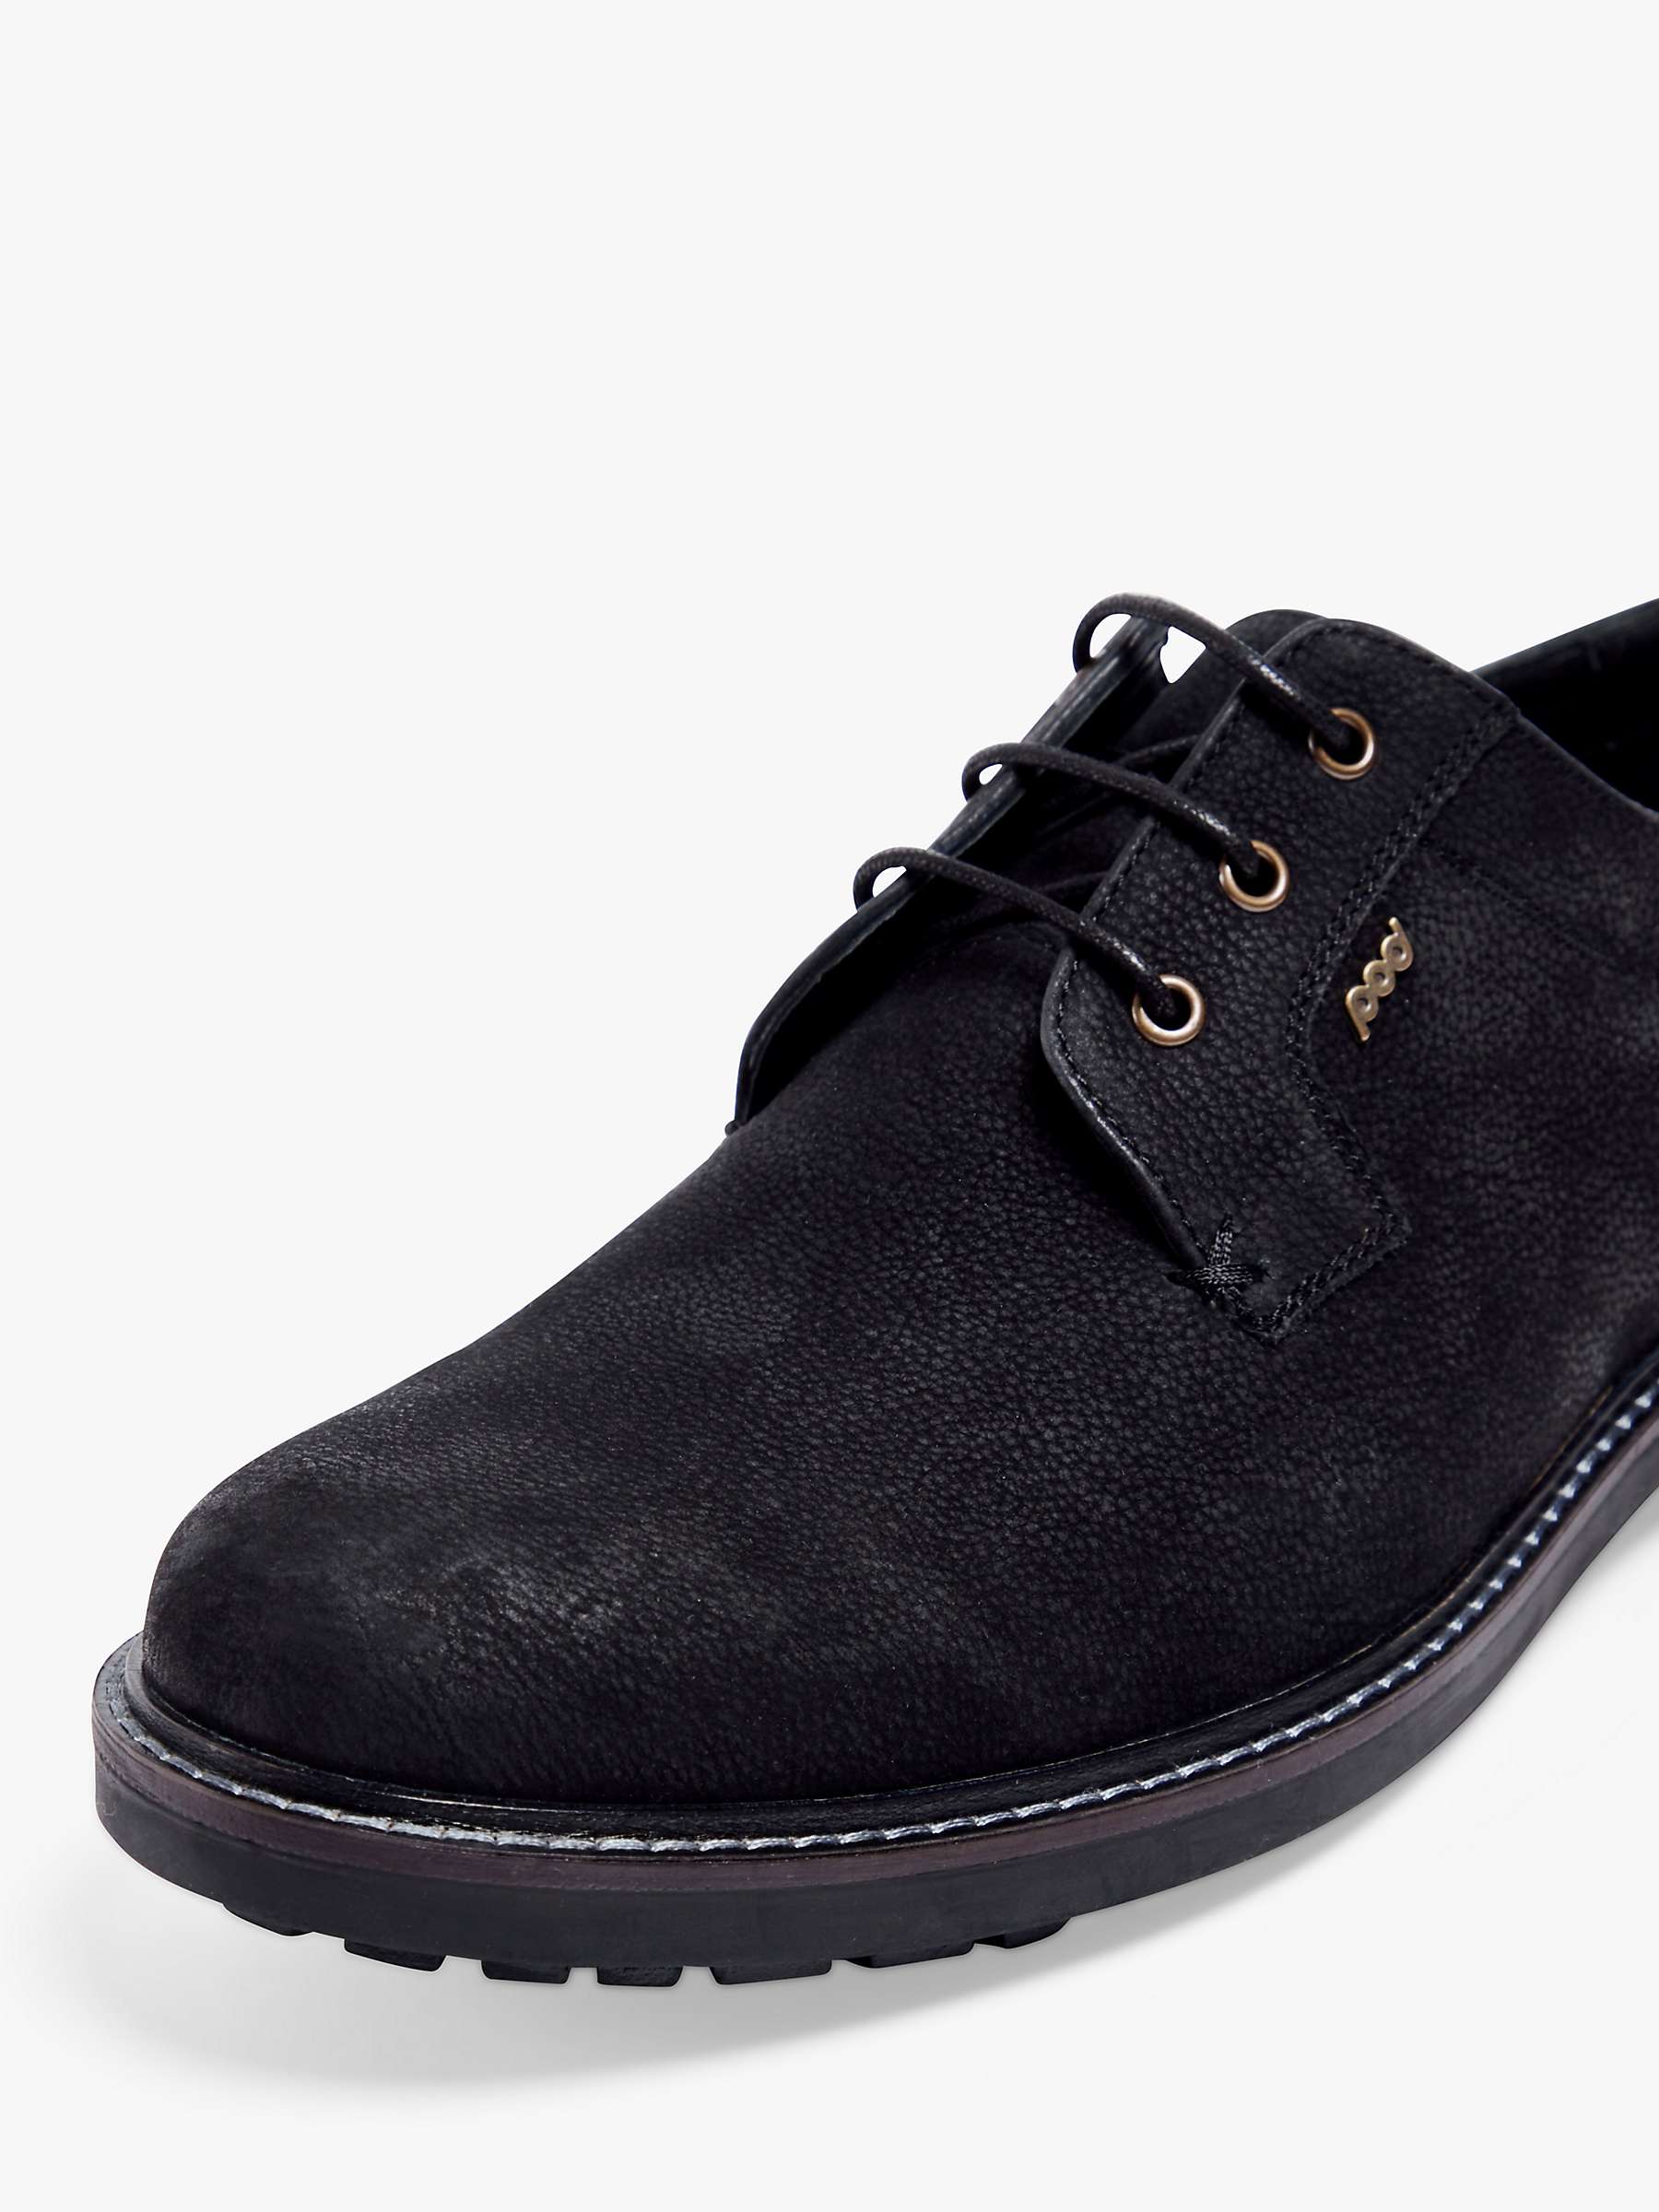 Buy Pod Samuel Derby Shoes, Black Online at johnlewis.com